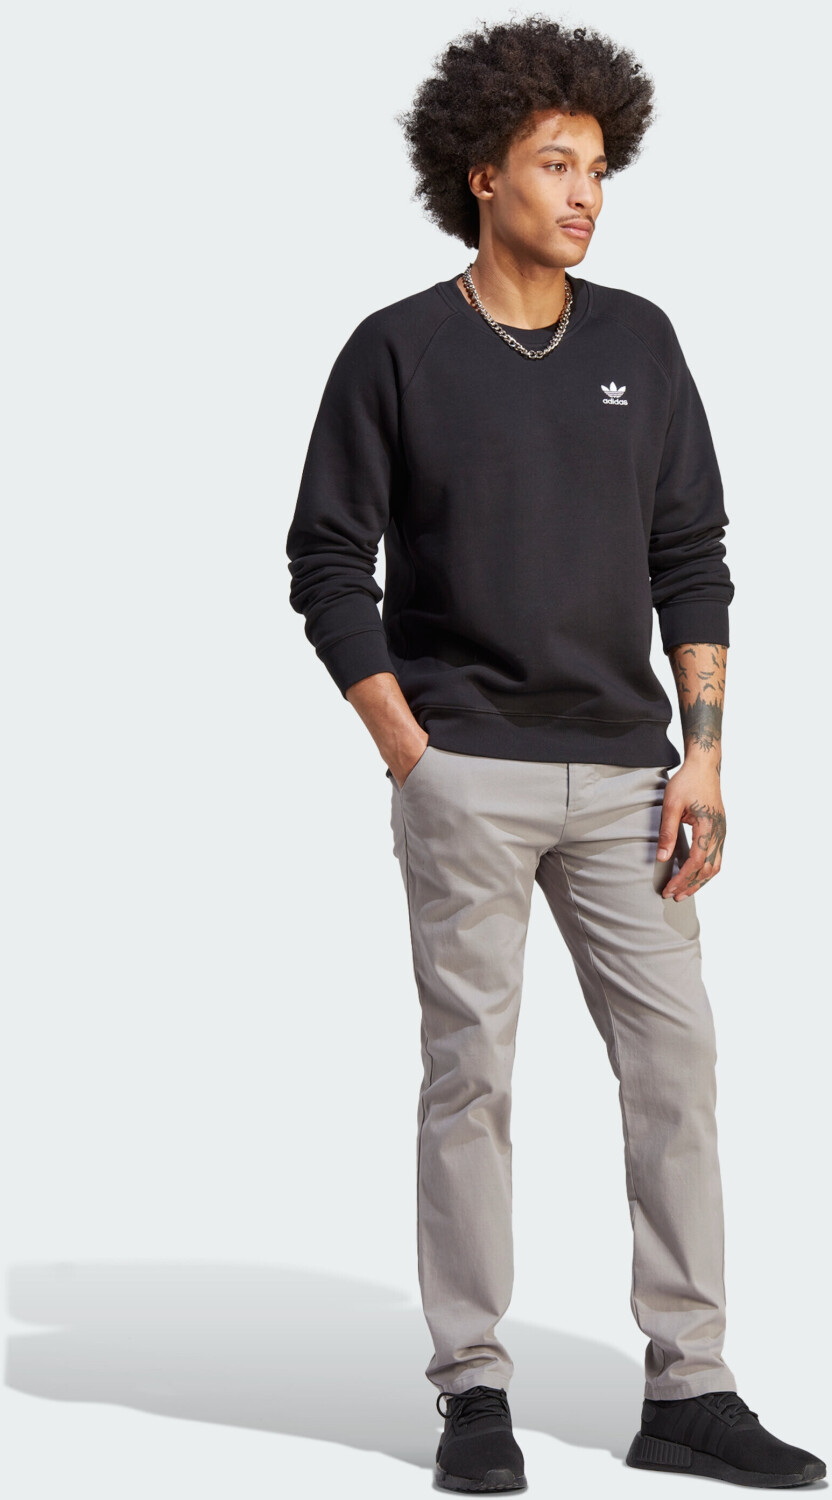 43,86 Man (IM4532) Preisvergleich € black Sweatshirt Trefoil Essentials bei ab Adidas |